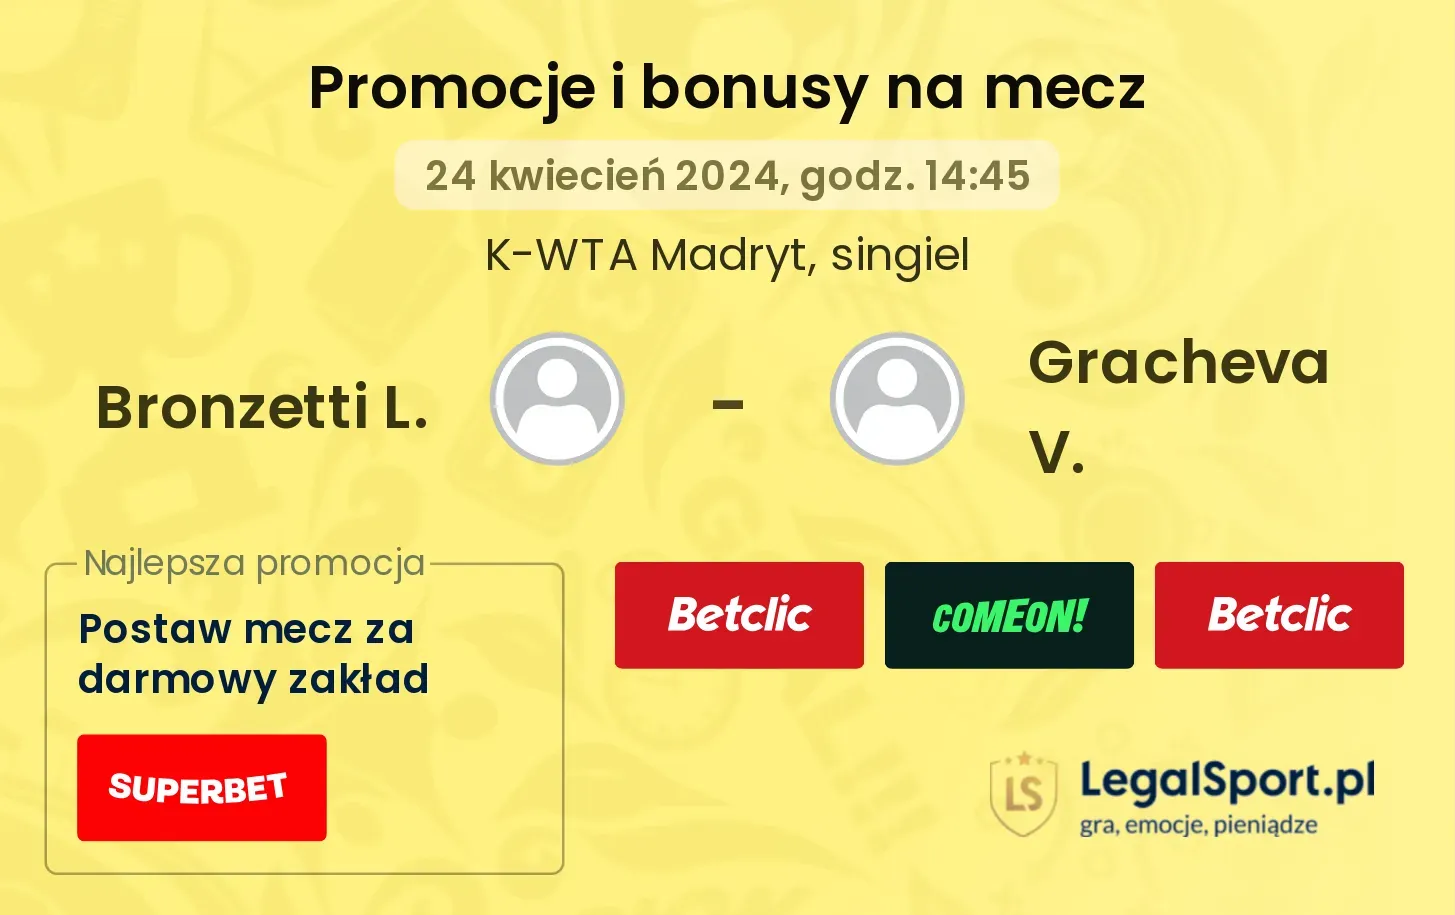 Bronzetti L. - Gracheva V. promocje bonusy na mecz